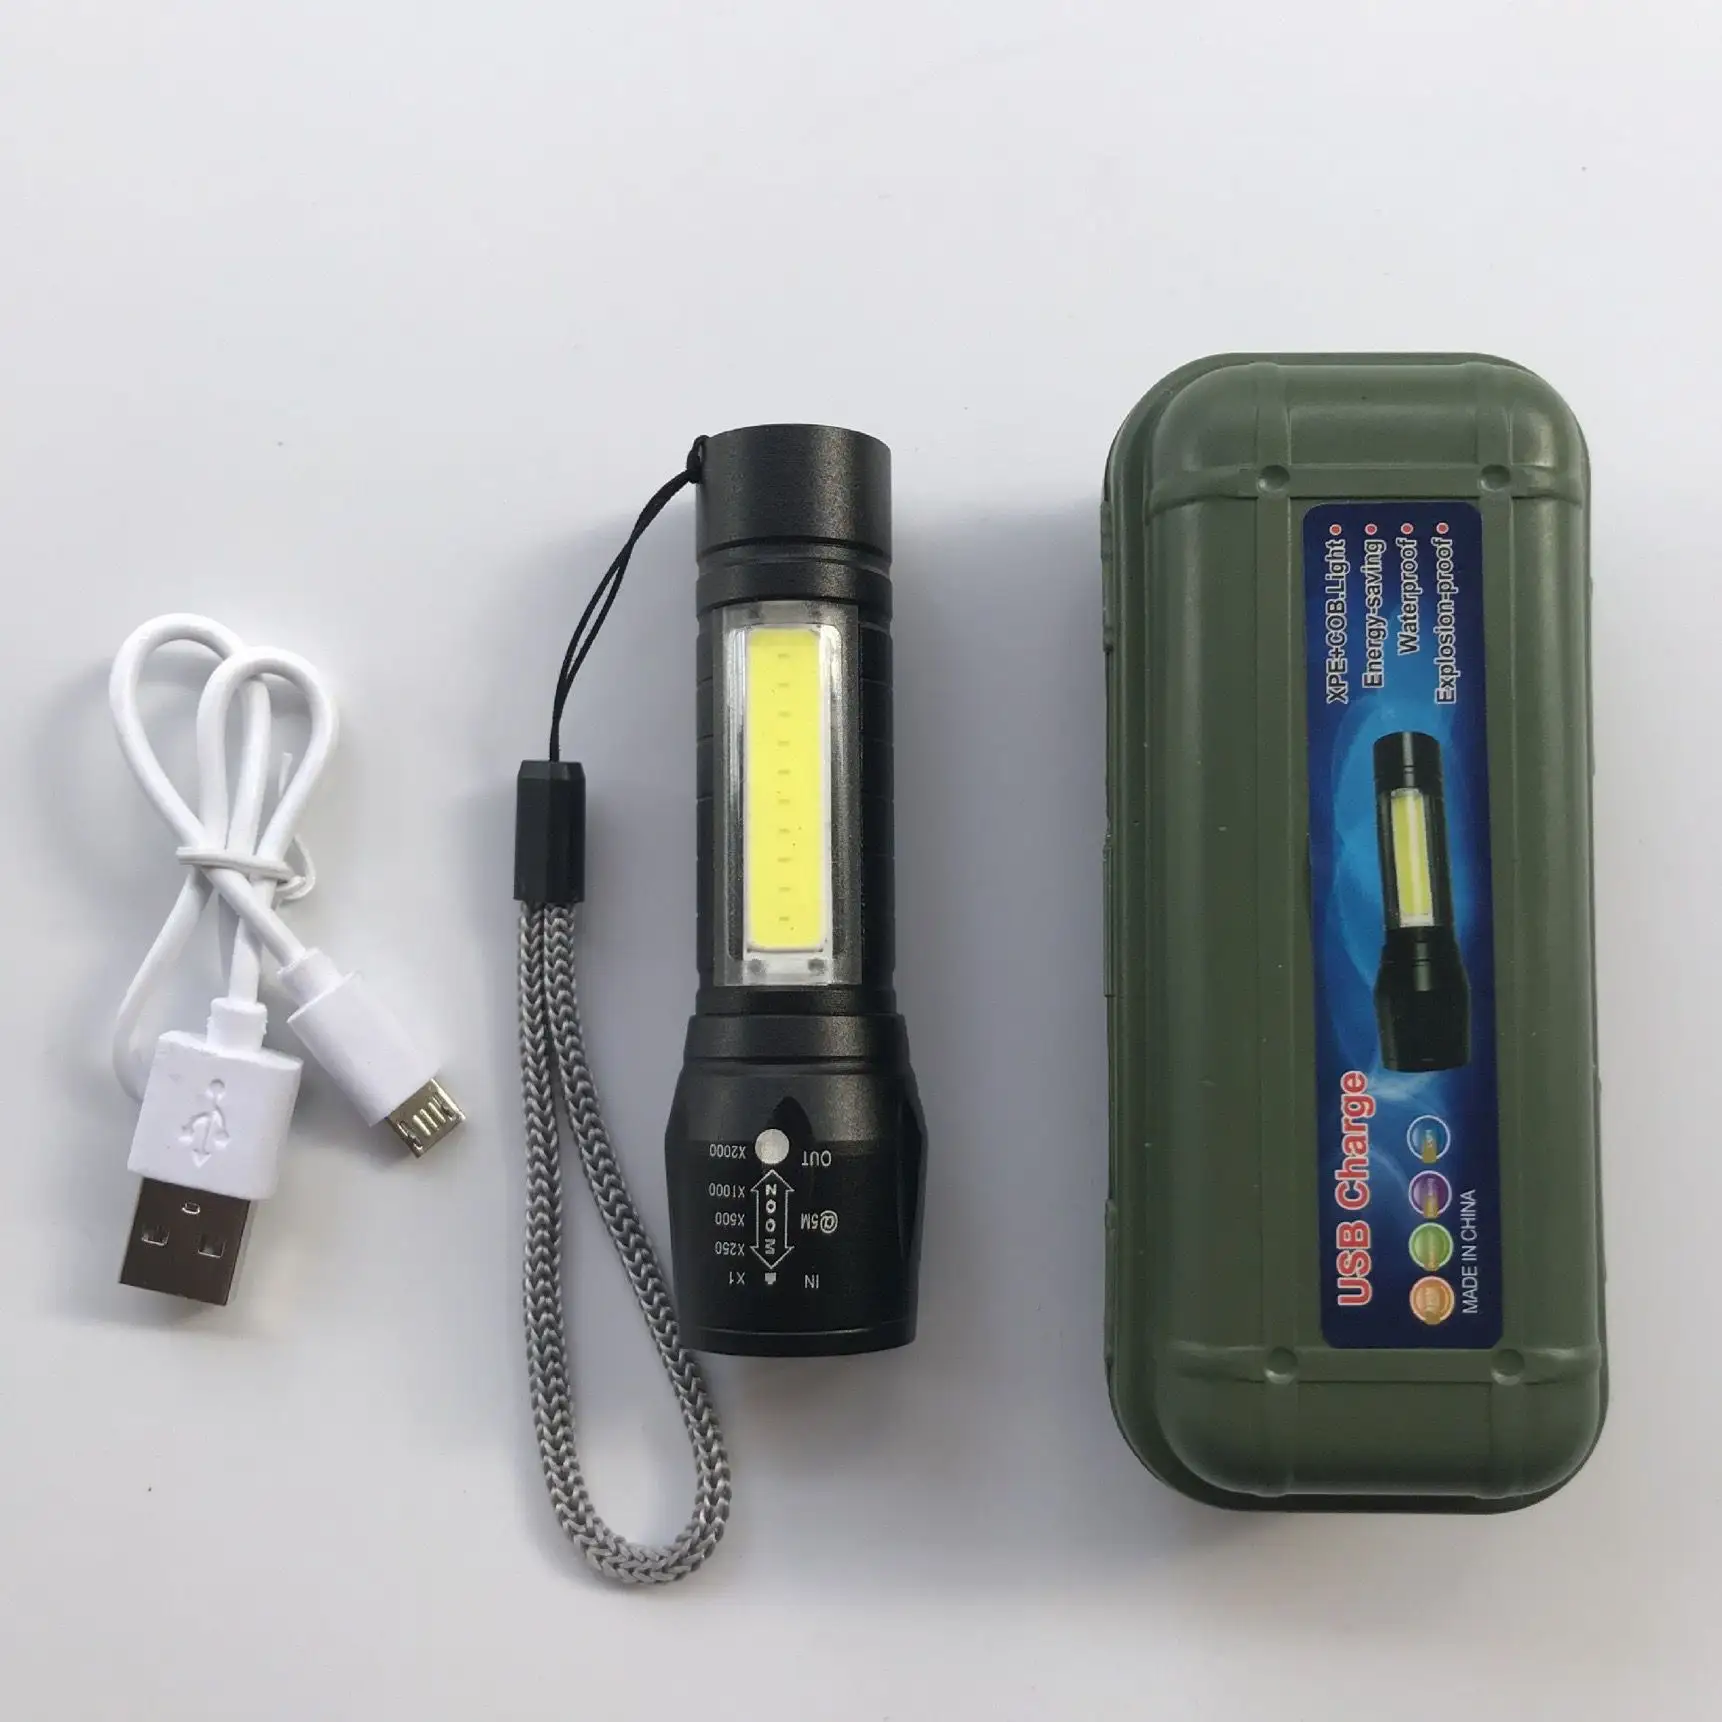 Zoom Focus Portable Torche Lampe Rechargeable Étanche Extérieur USB LED Penlight Mini LED Lampe de Poche